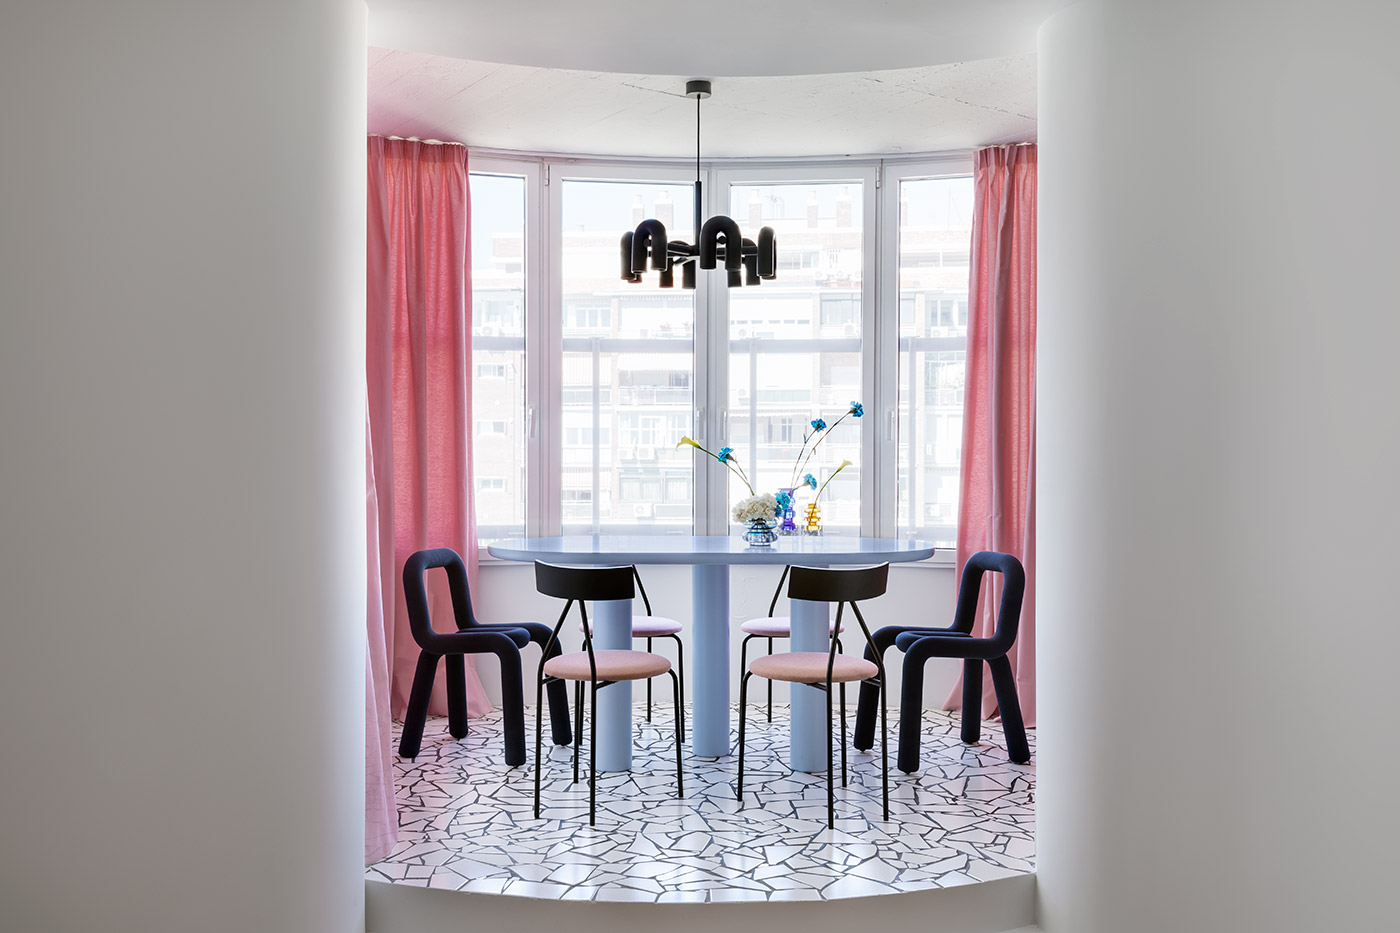 La arquitecta María Lozano diseña un apartamento en el edificio Torres Blancas de Madrid, un espacio perfecto para su nuevo hogar y su estudio de diseño